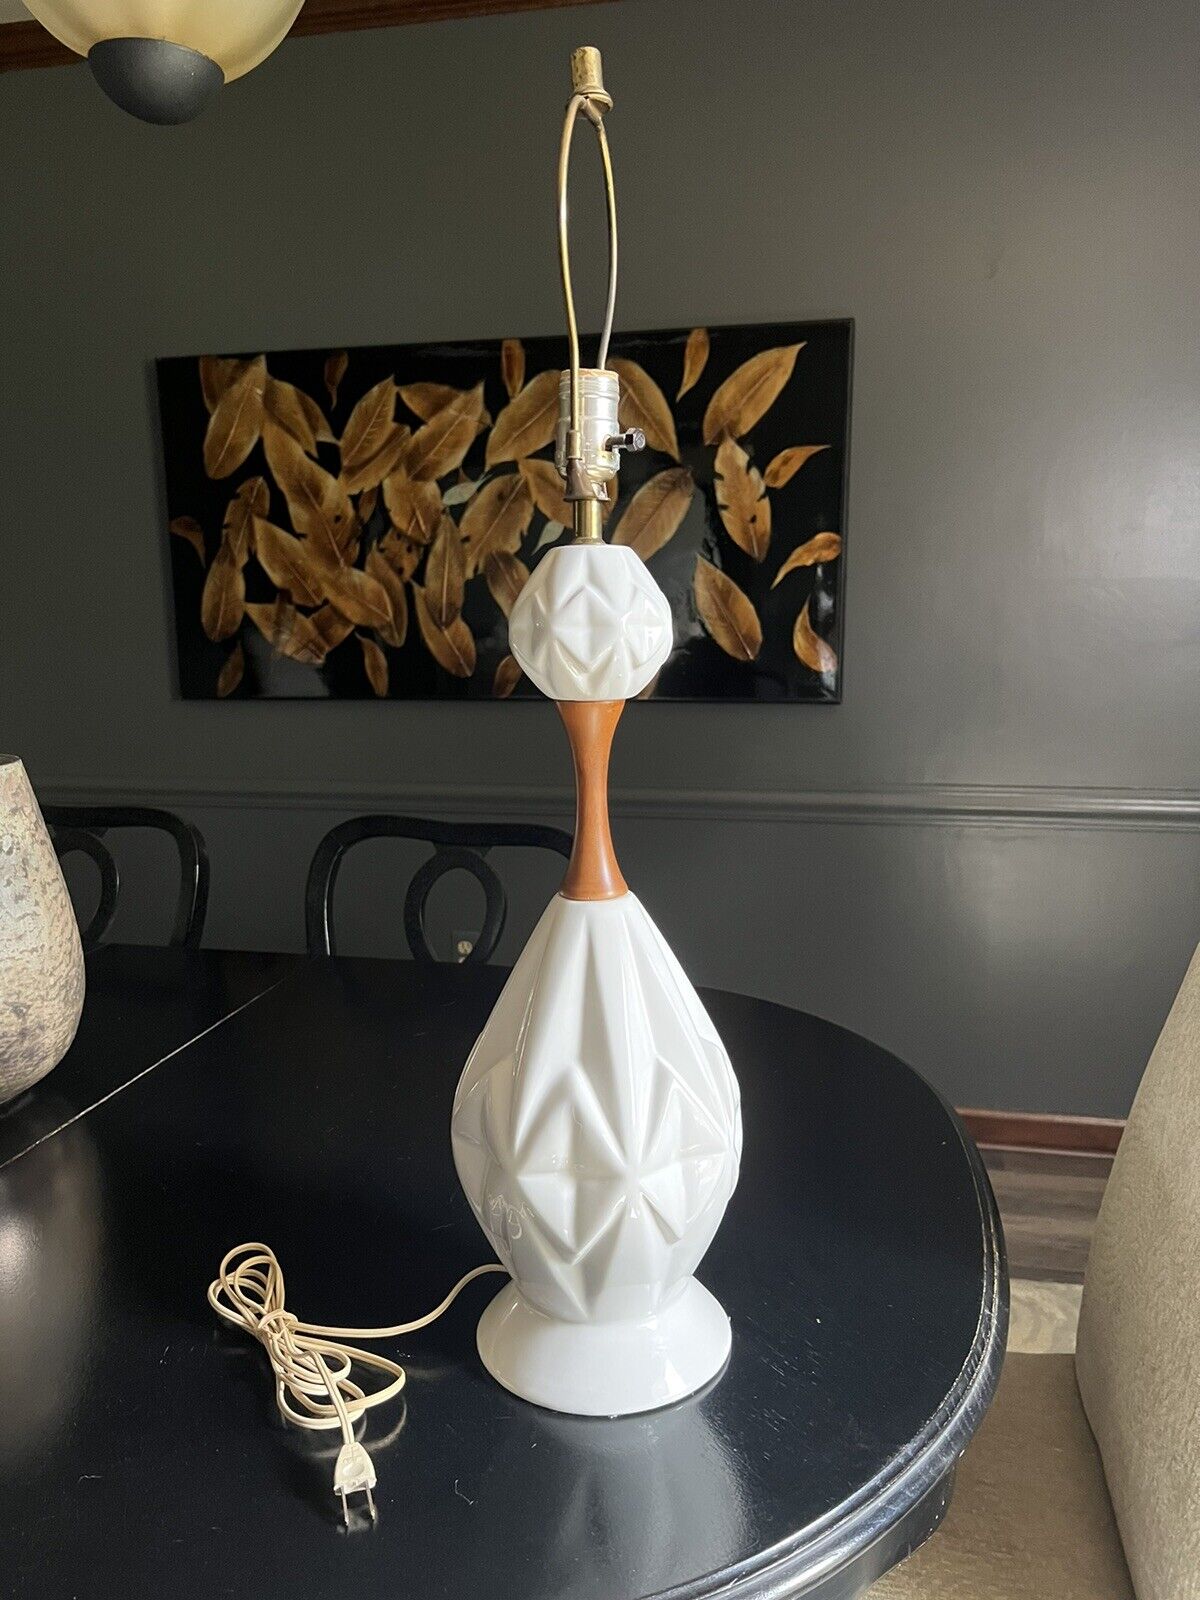 VTG Mid Century White Ceramic Lamp Ornate Design